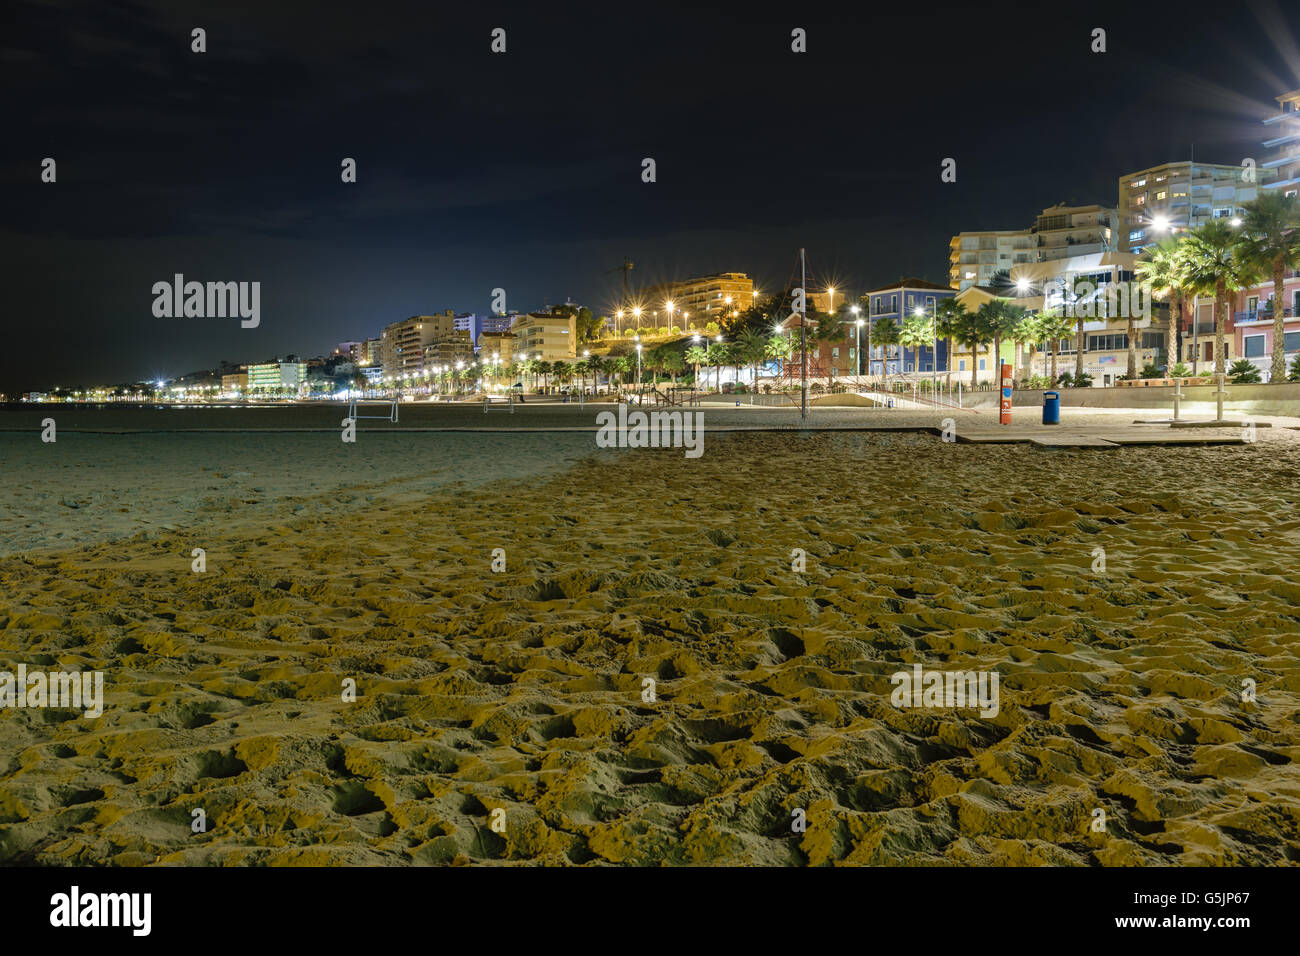 Beach and cityscape of Villajoyosa at night, Spain Stock Photo